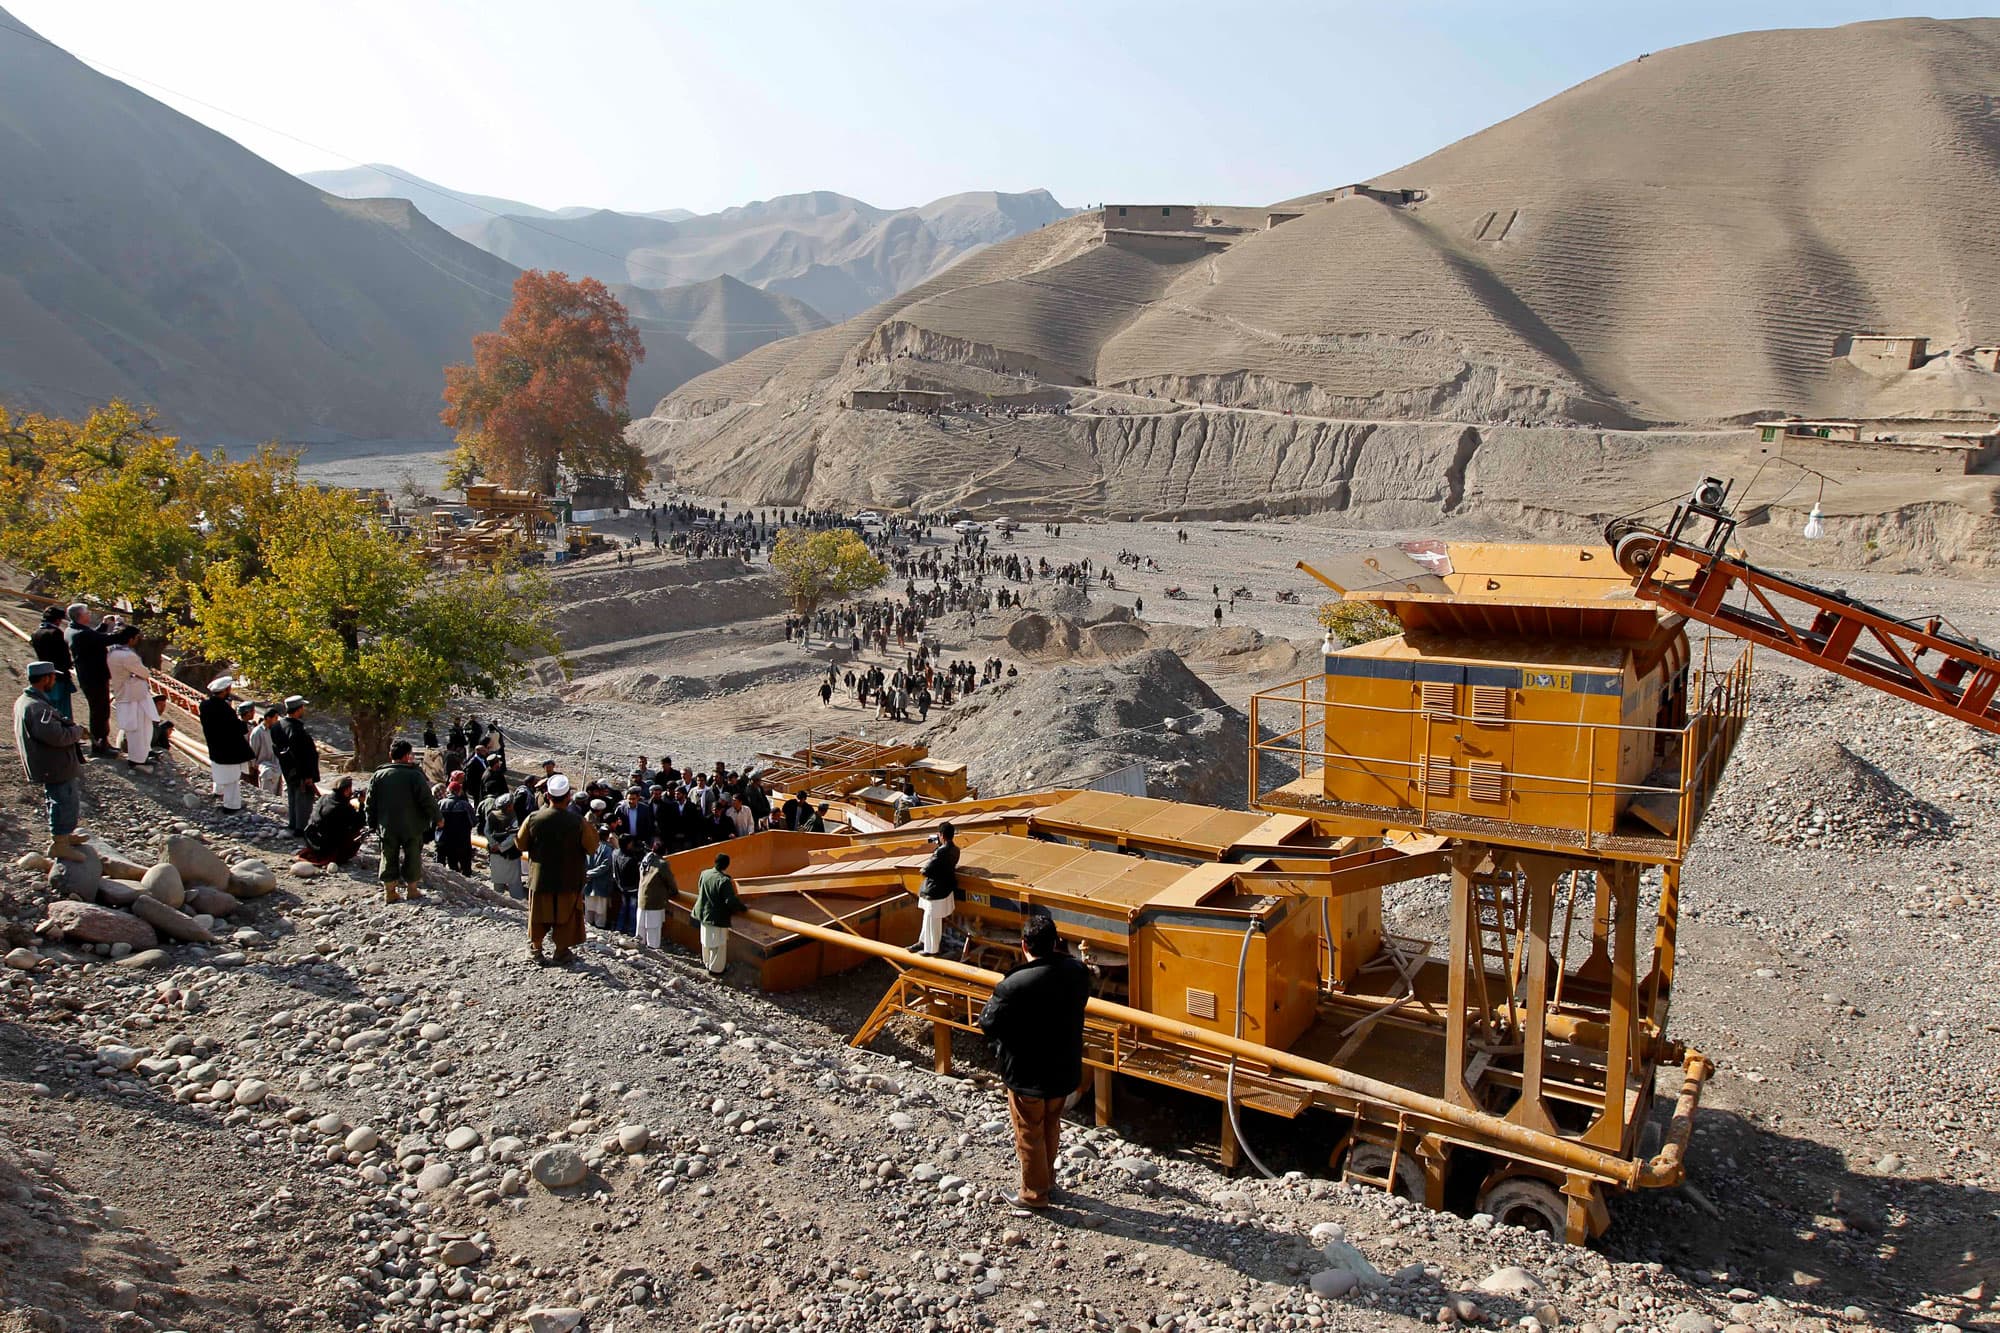 Las supuestas ambiciones de China de sumergirse en Afganistán son exageradas y poco realistas, dicen los expertos